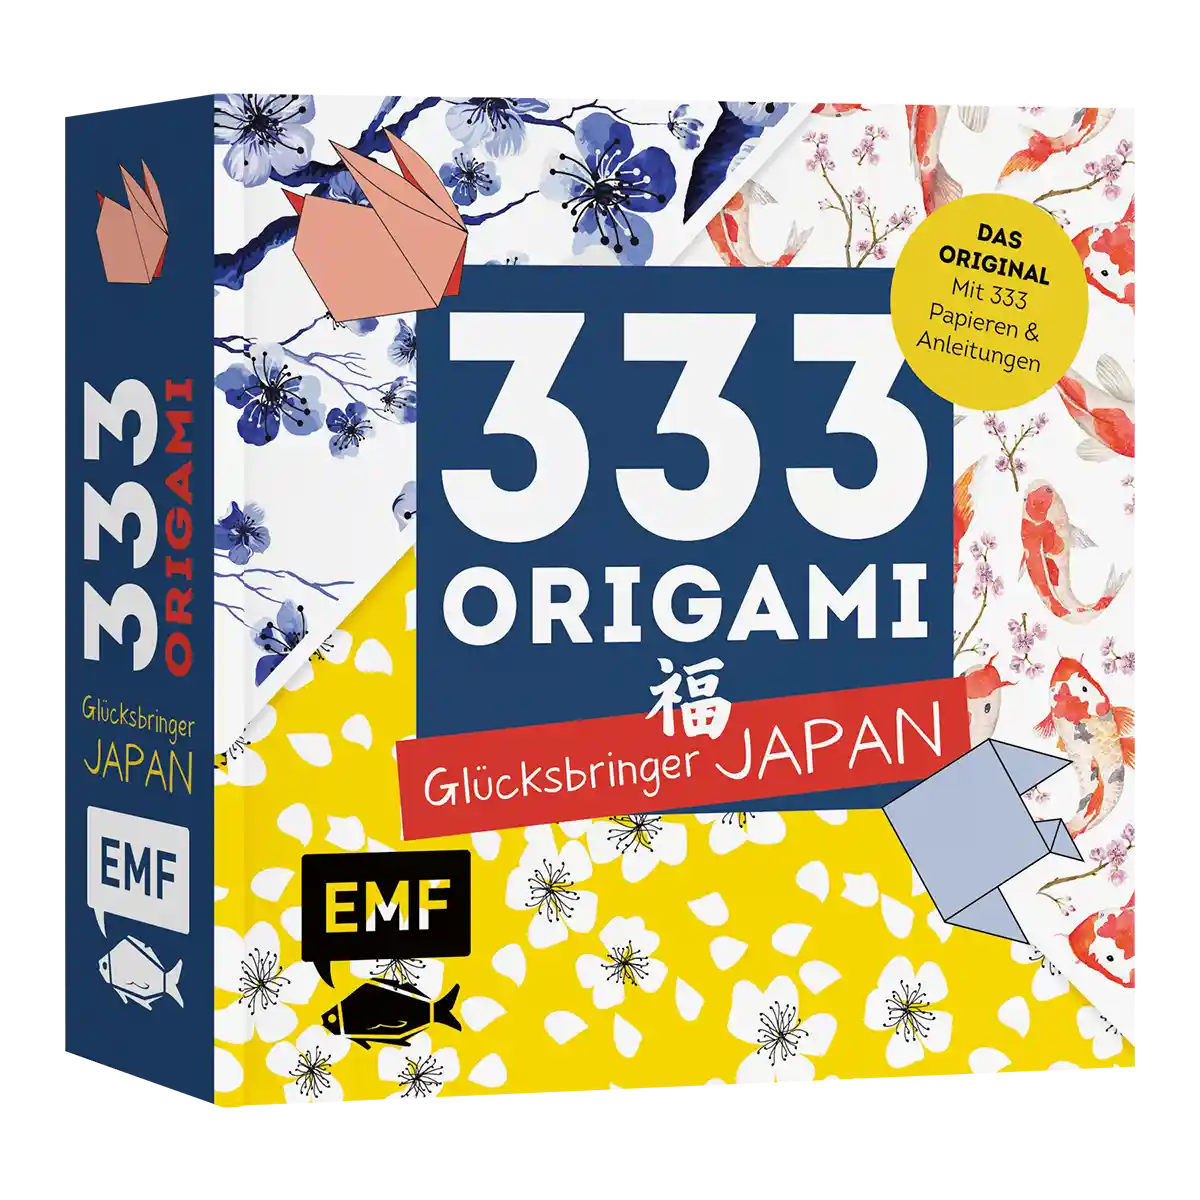 EMF 333 Origami / Glücksbringer Japan